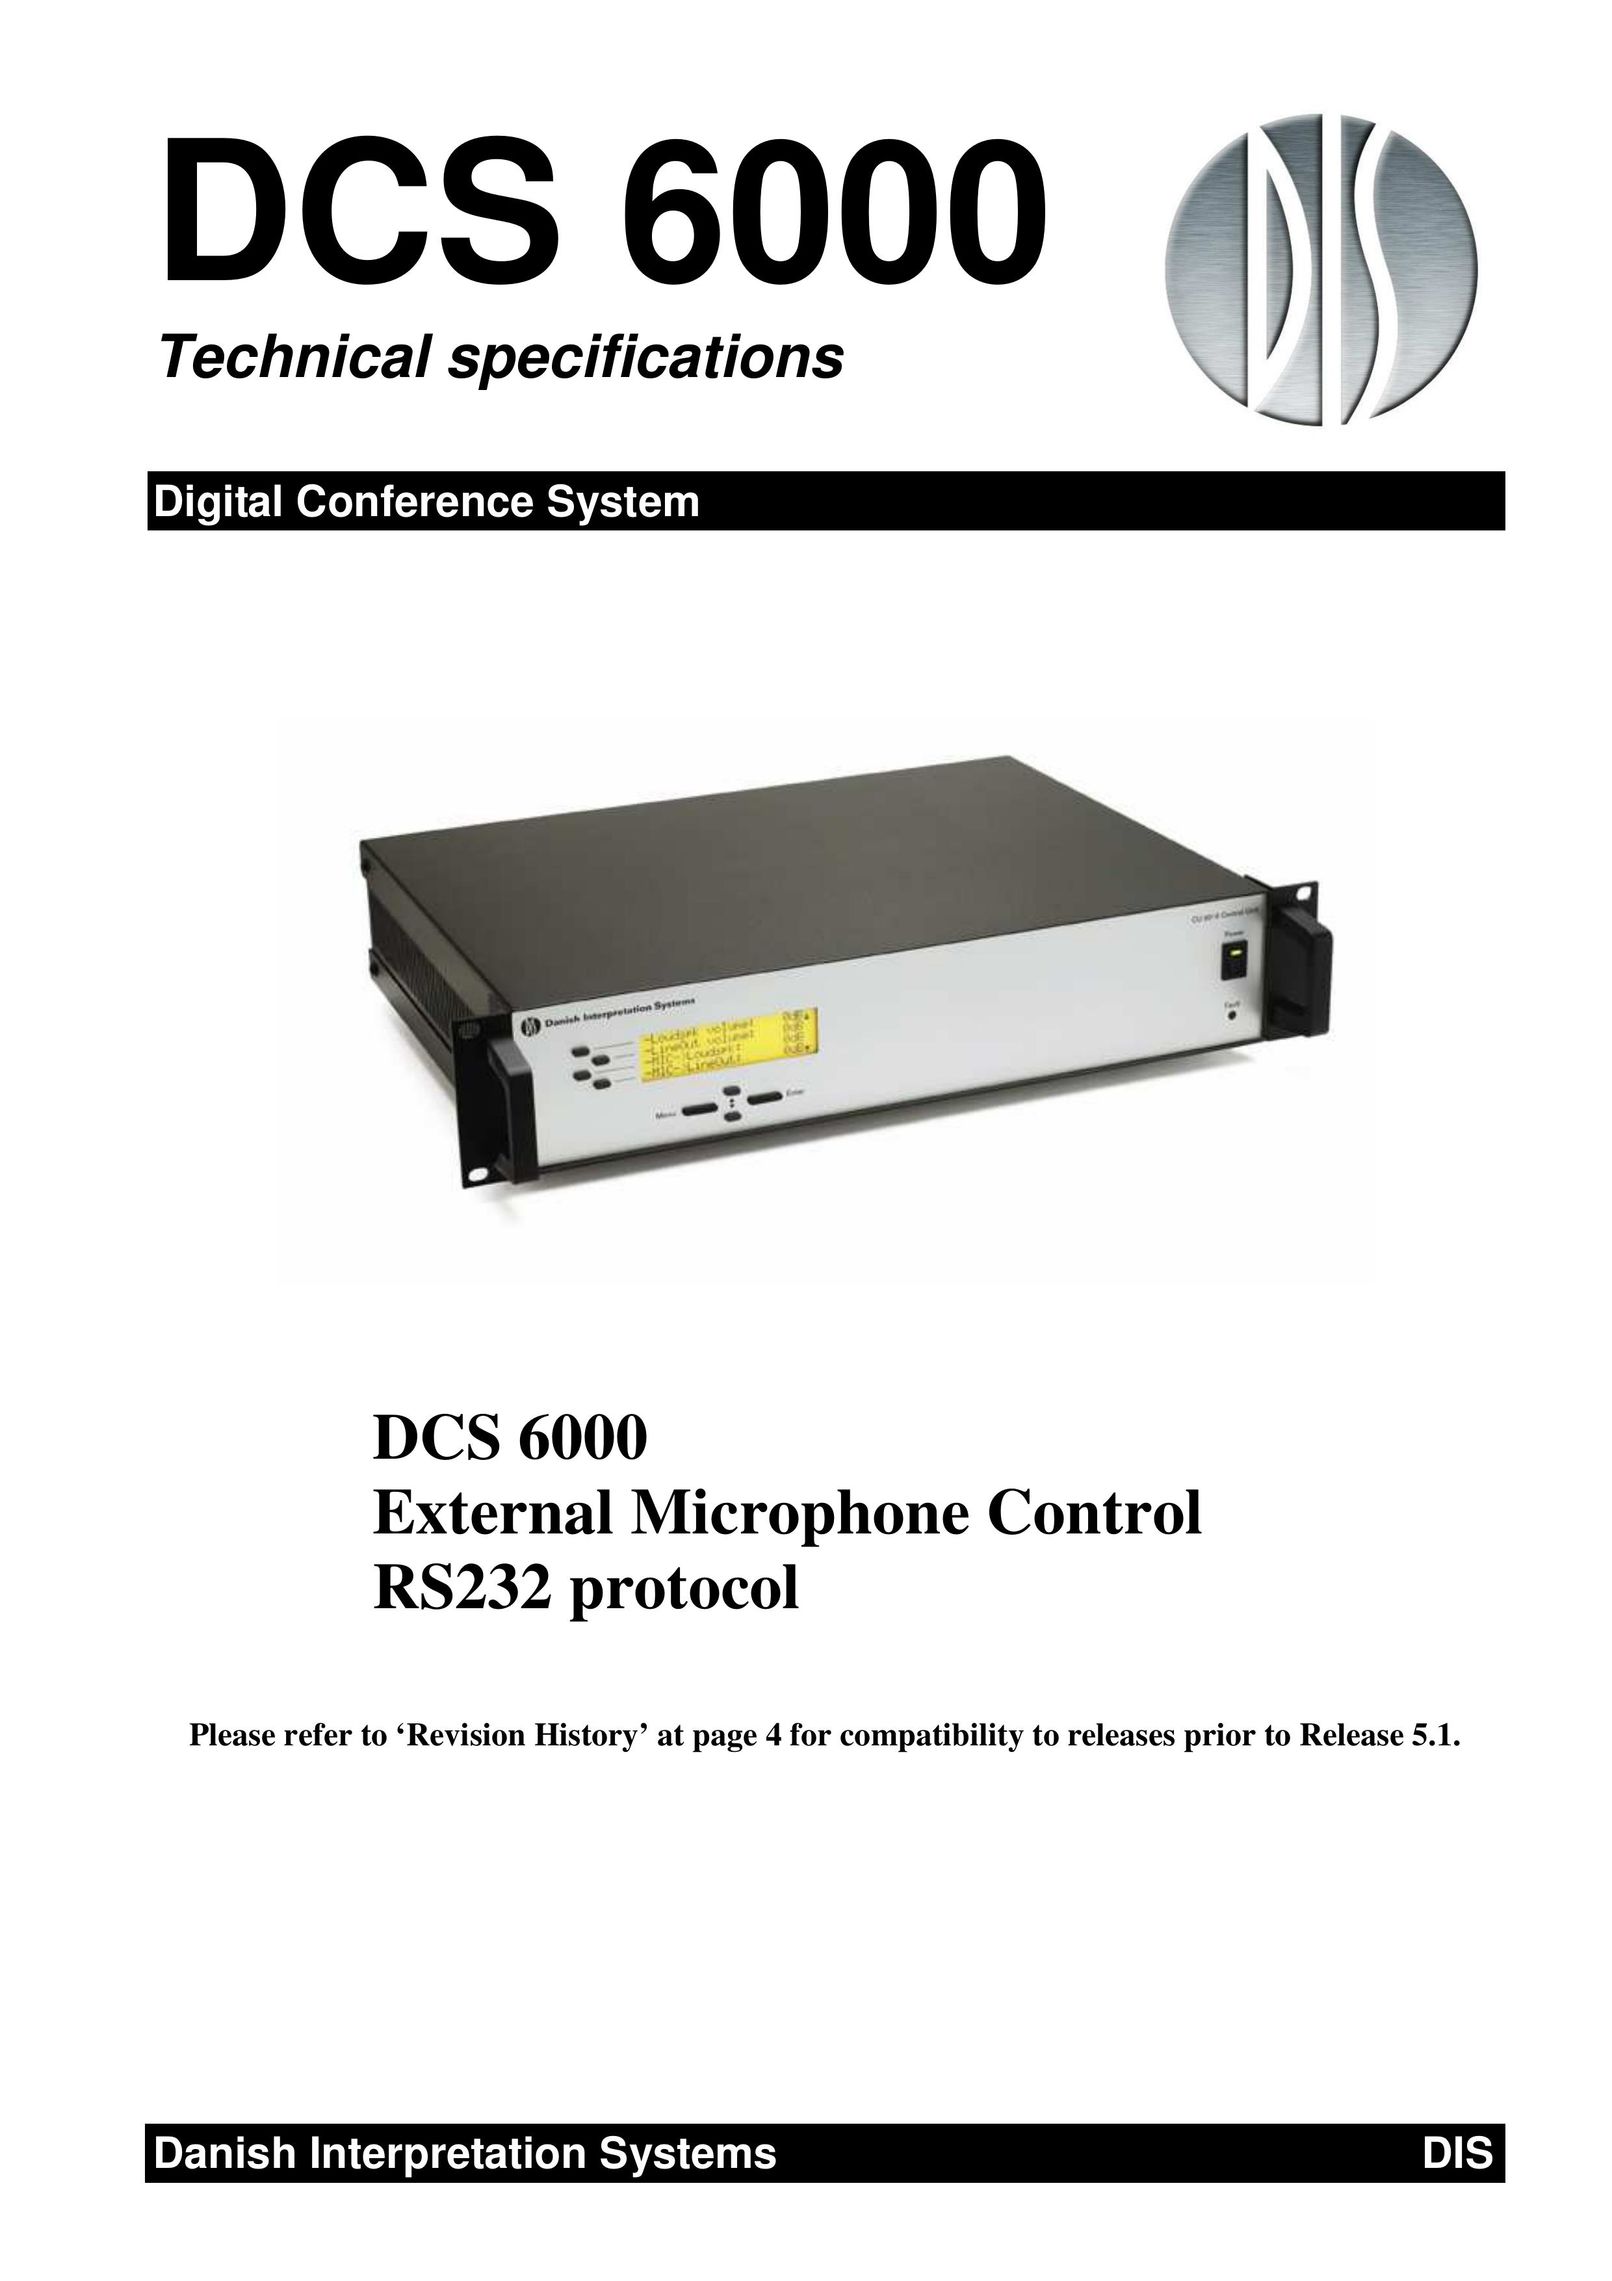 Listen Technologies DCS 6000 Network Card User Manual